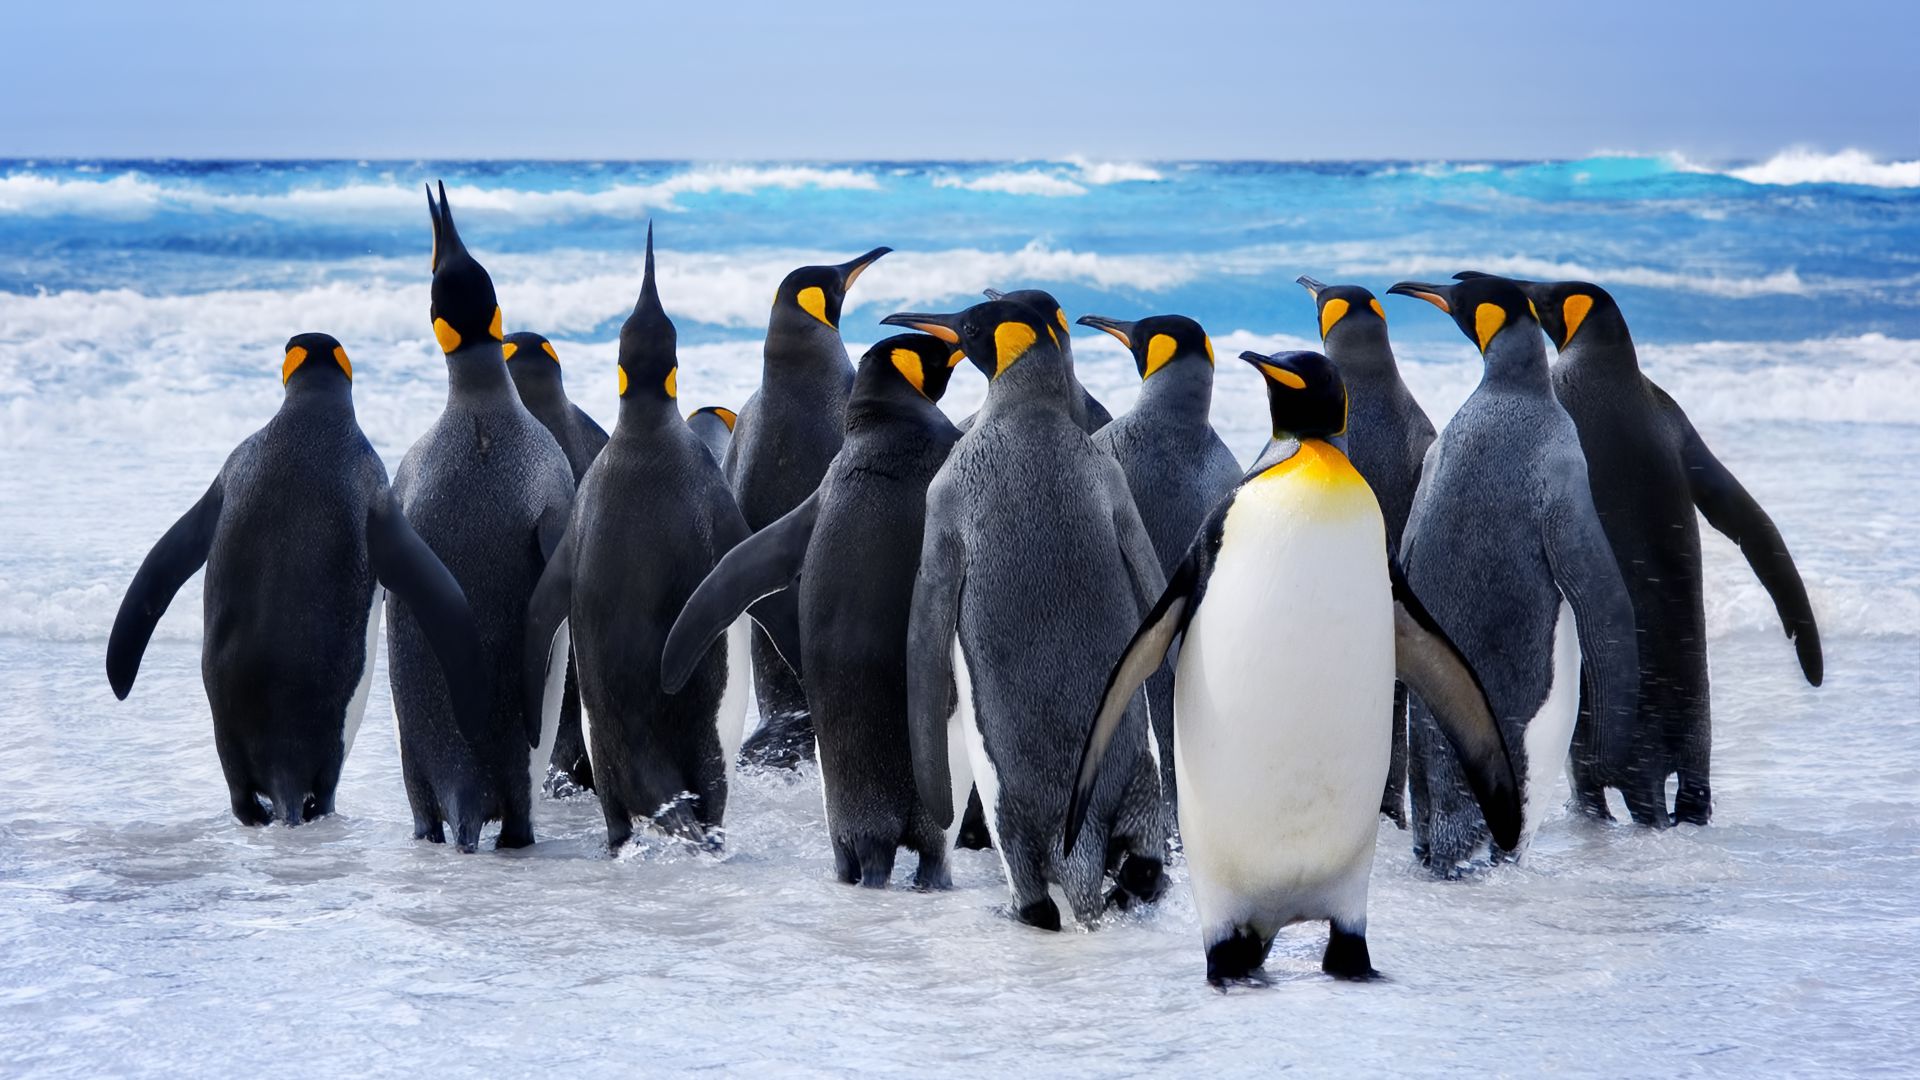 Пингвин, снег, океан, милые животные, забавный, Pinguin, snow, ocean, cute animals, funny (horizontal)